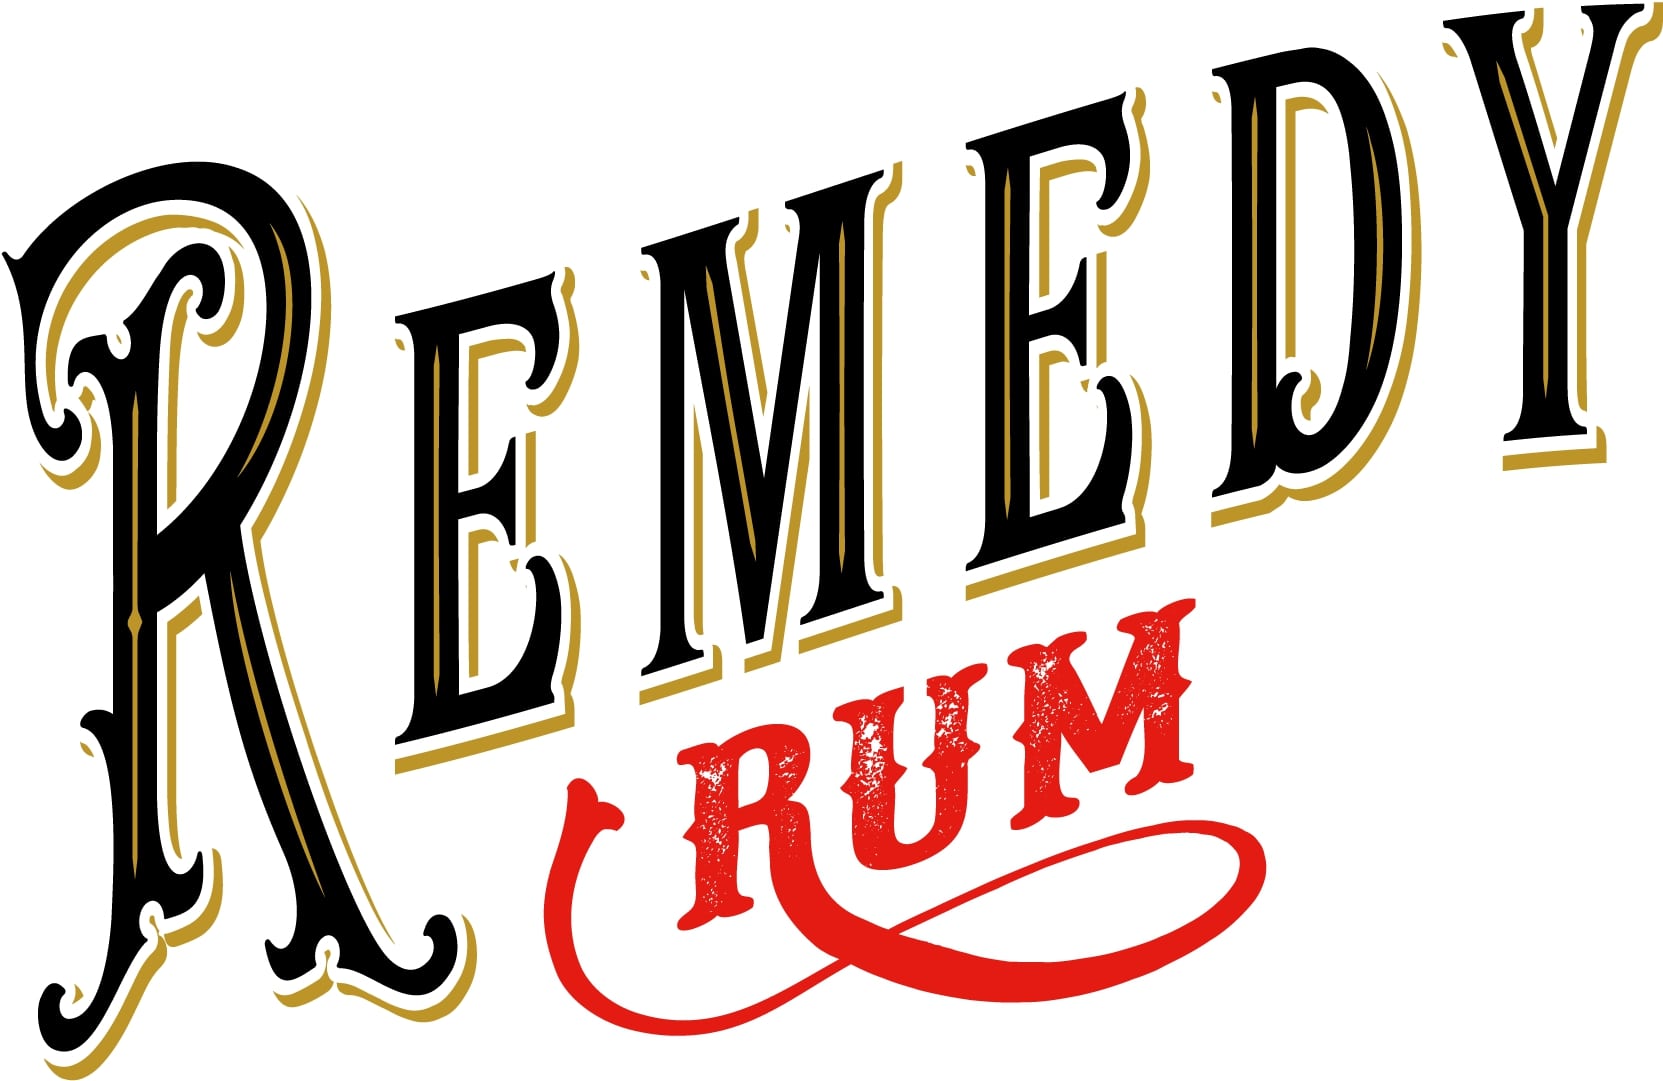 Remedy Spiced Rum Golden günstig 20s kaufen